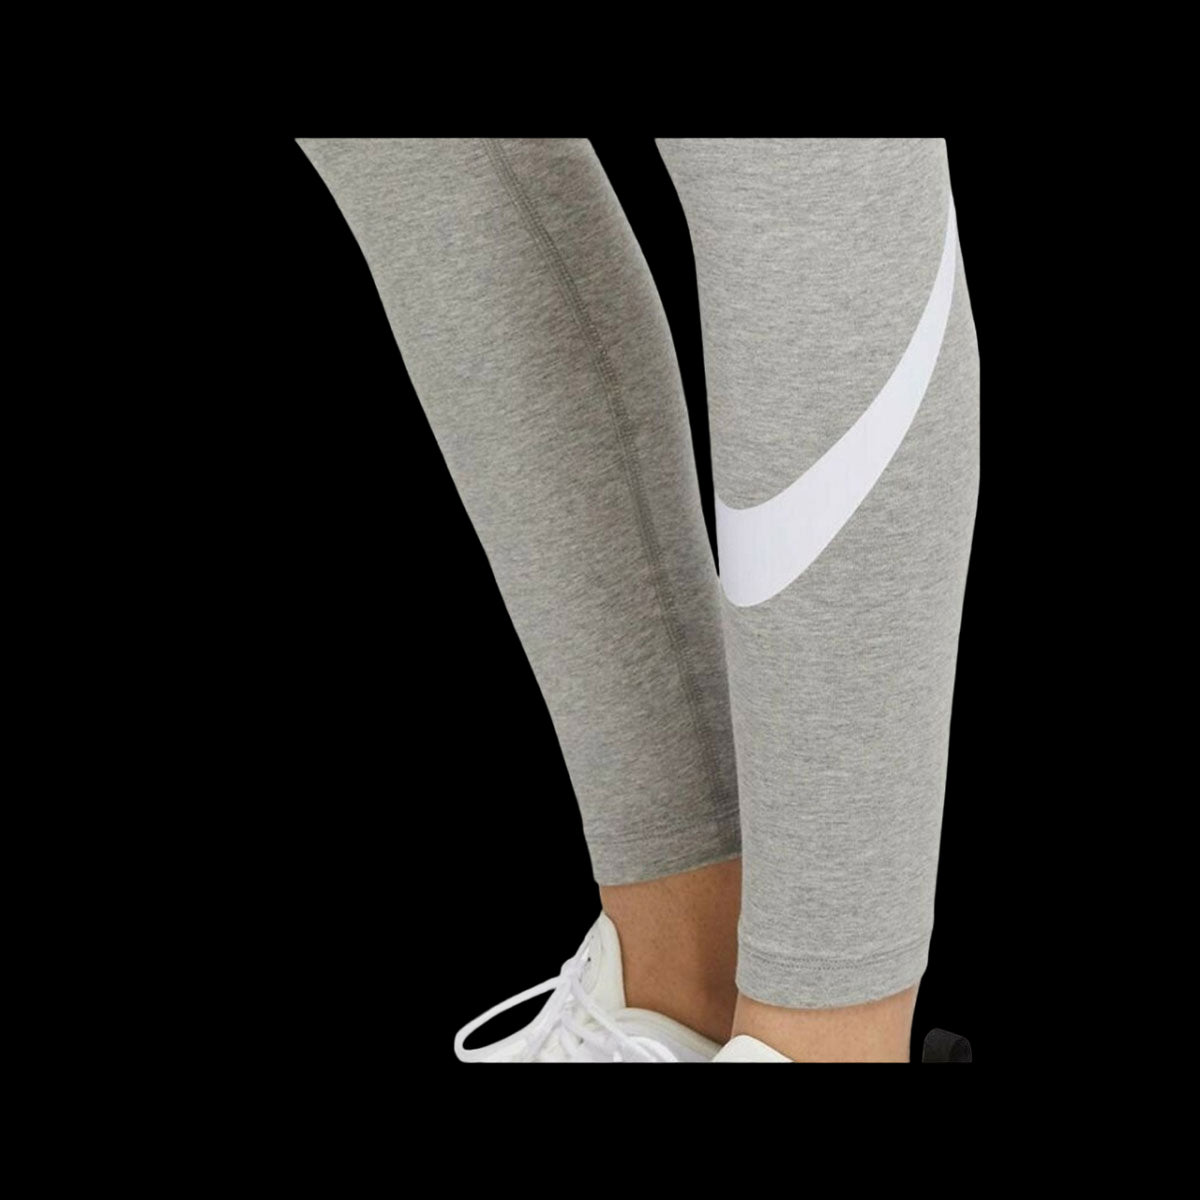 Nike Women's Sportswear Essential Mid-Rise Swoosh Leggings